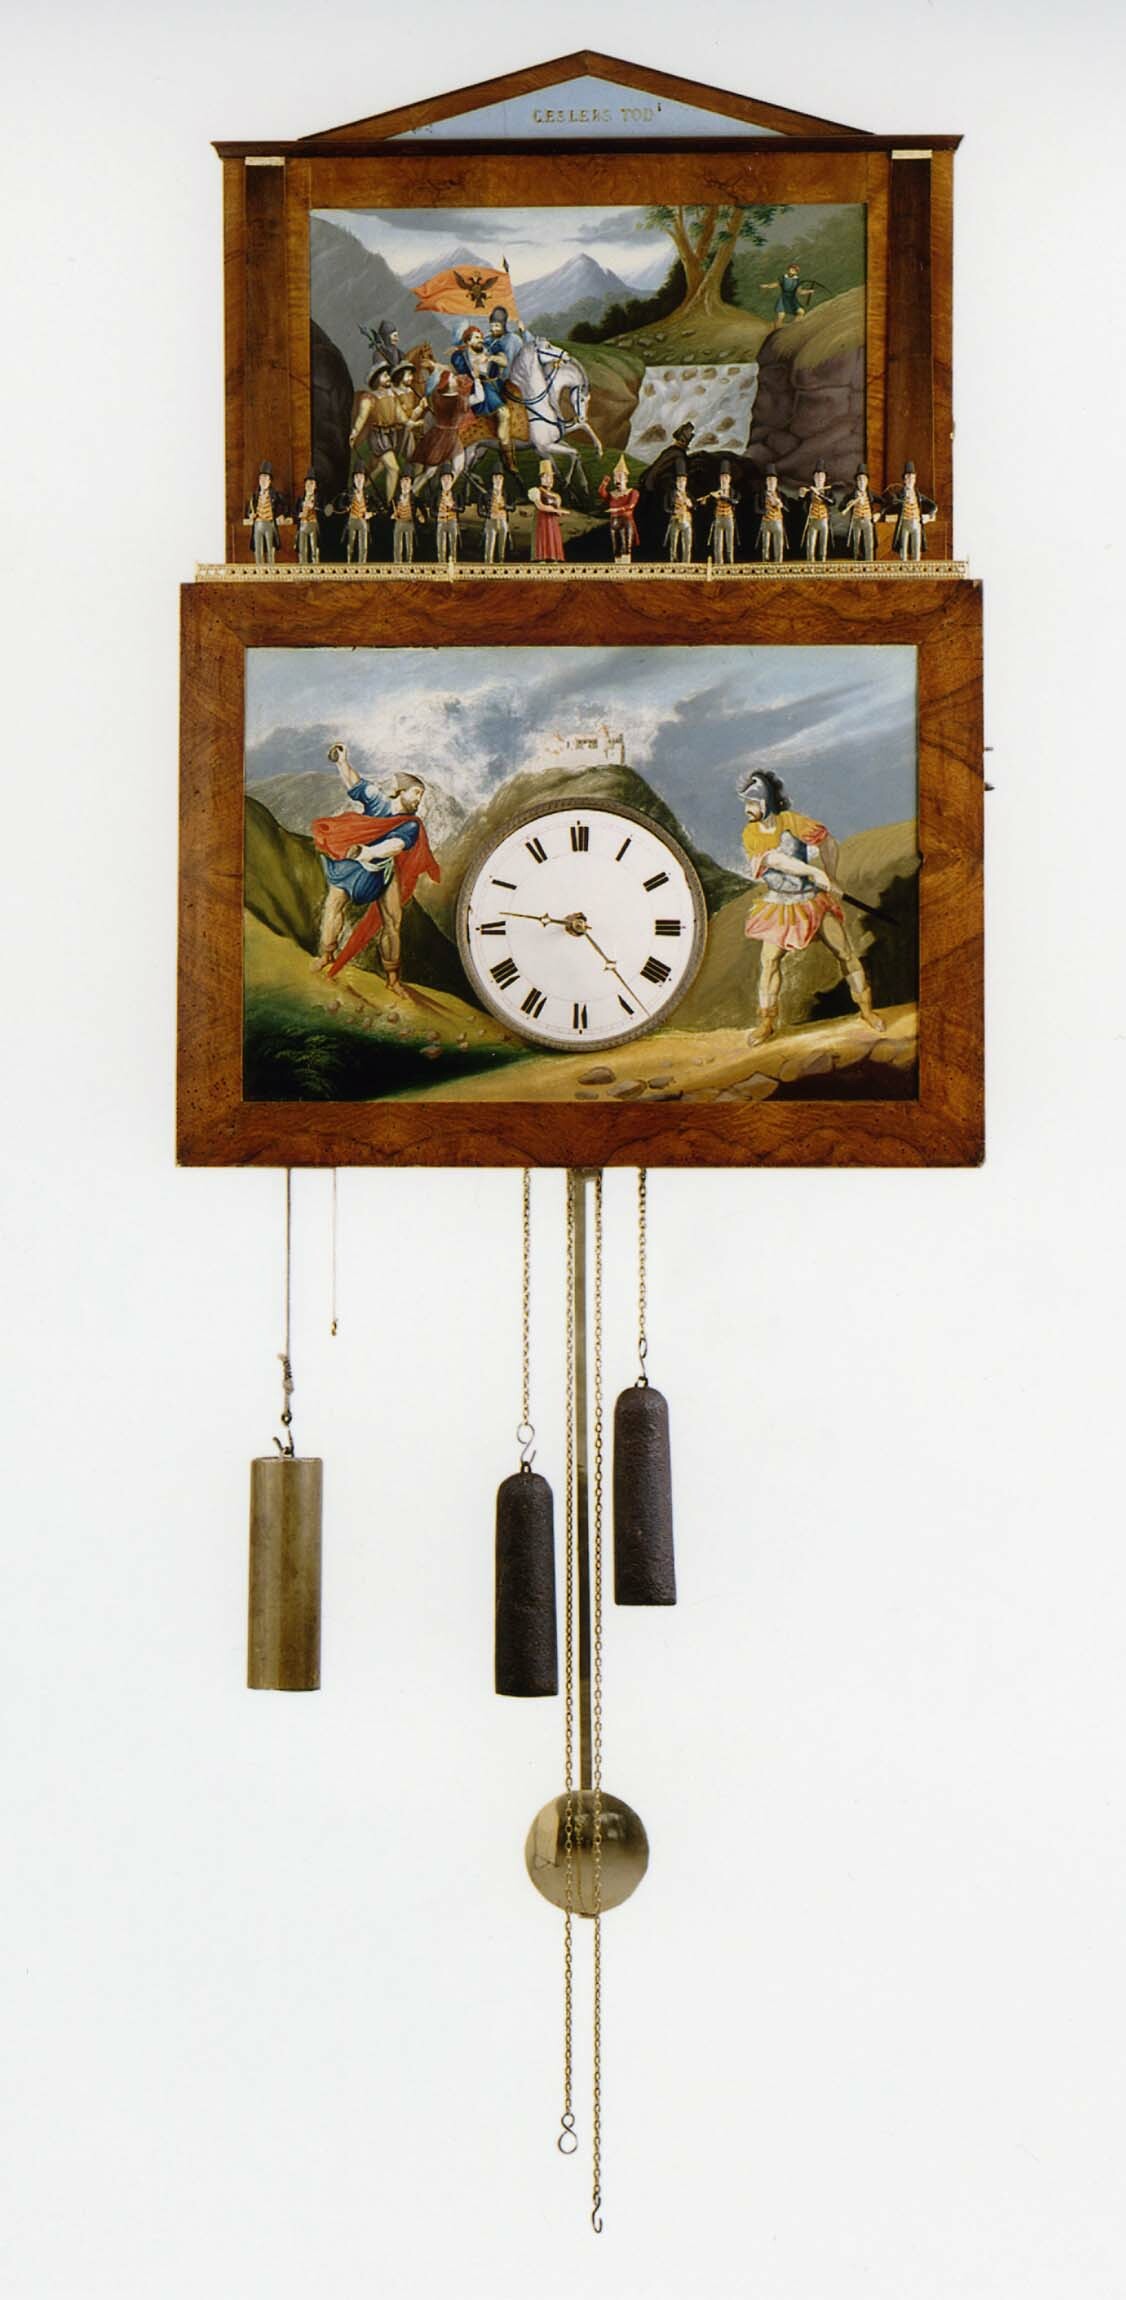 Flötenuhr, Werk: Schwarzwald, Schild: Leodegar Dufner, Schönenbach, um 1840 (Deutsches Uhrenmuseum CC BY-SA)